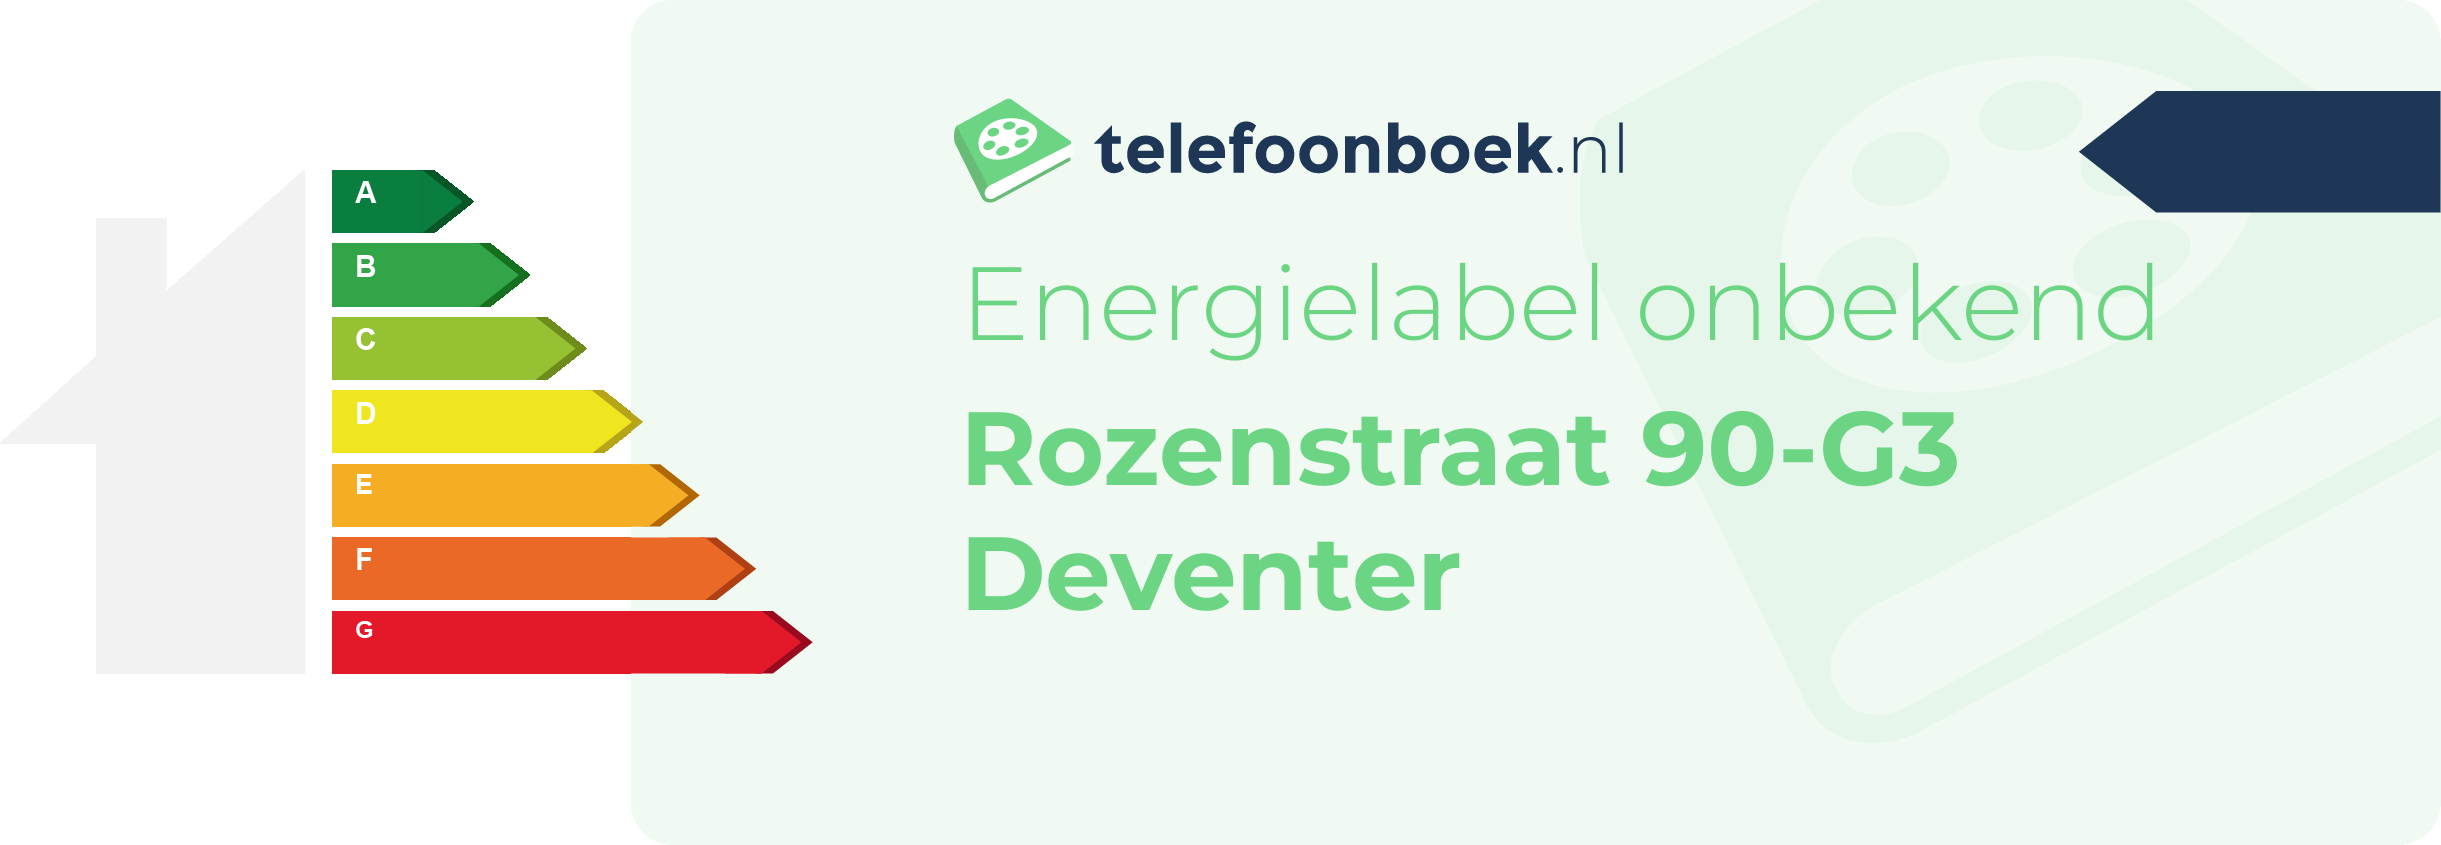 Energielabel Rozenstraat 90-G3 Deventer